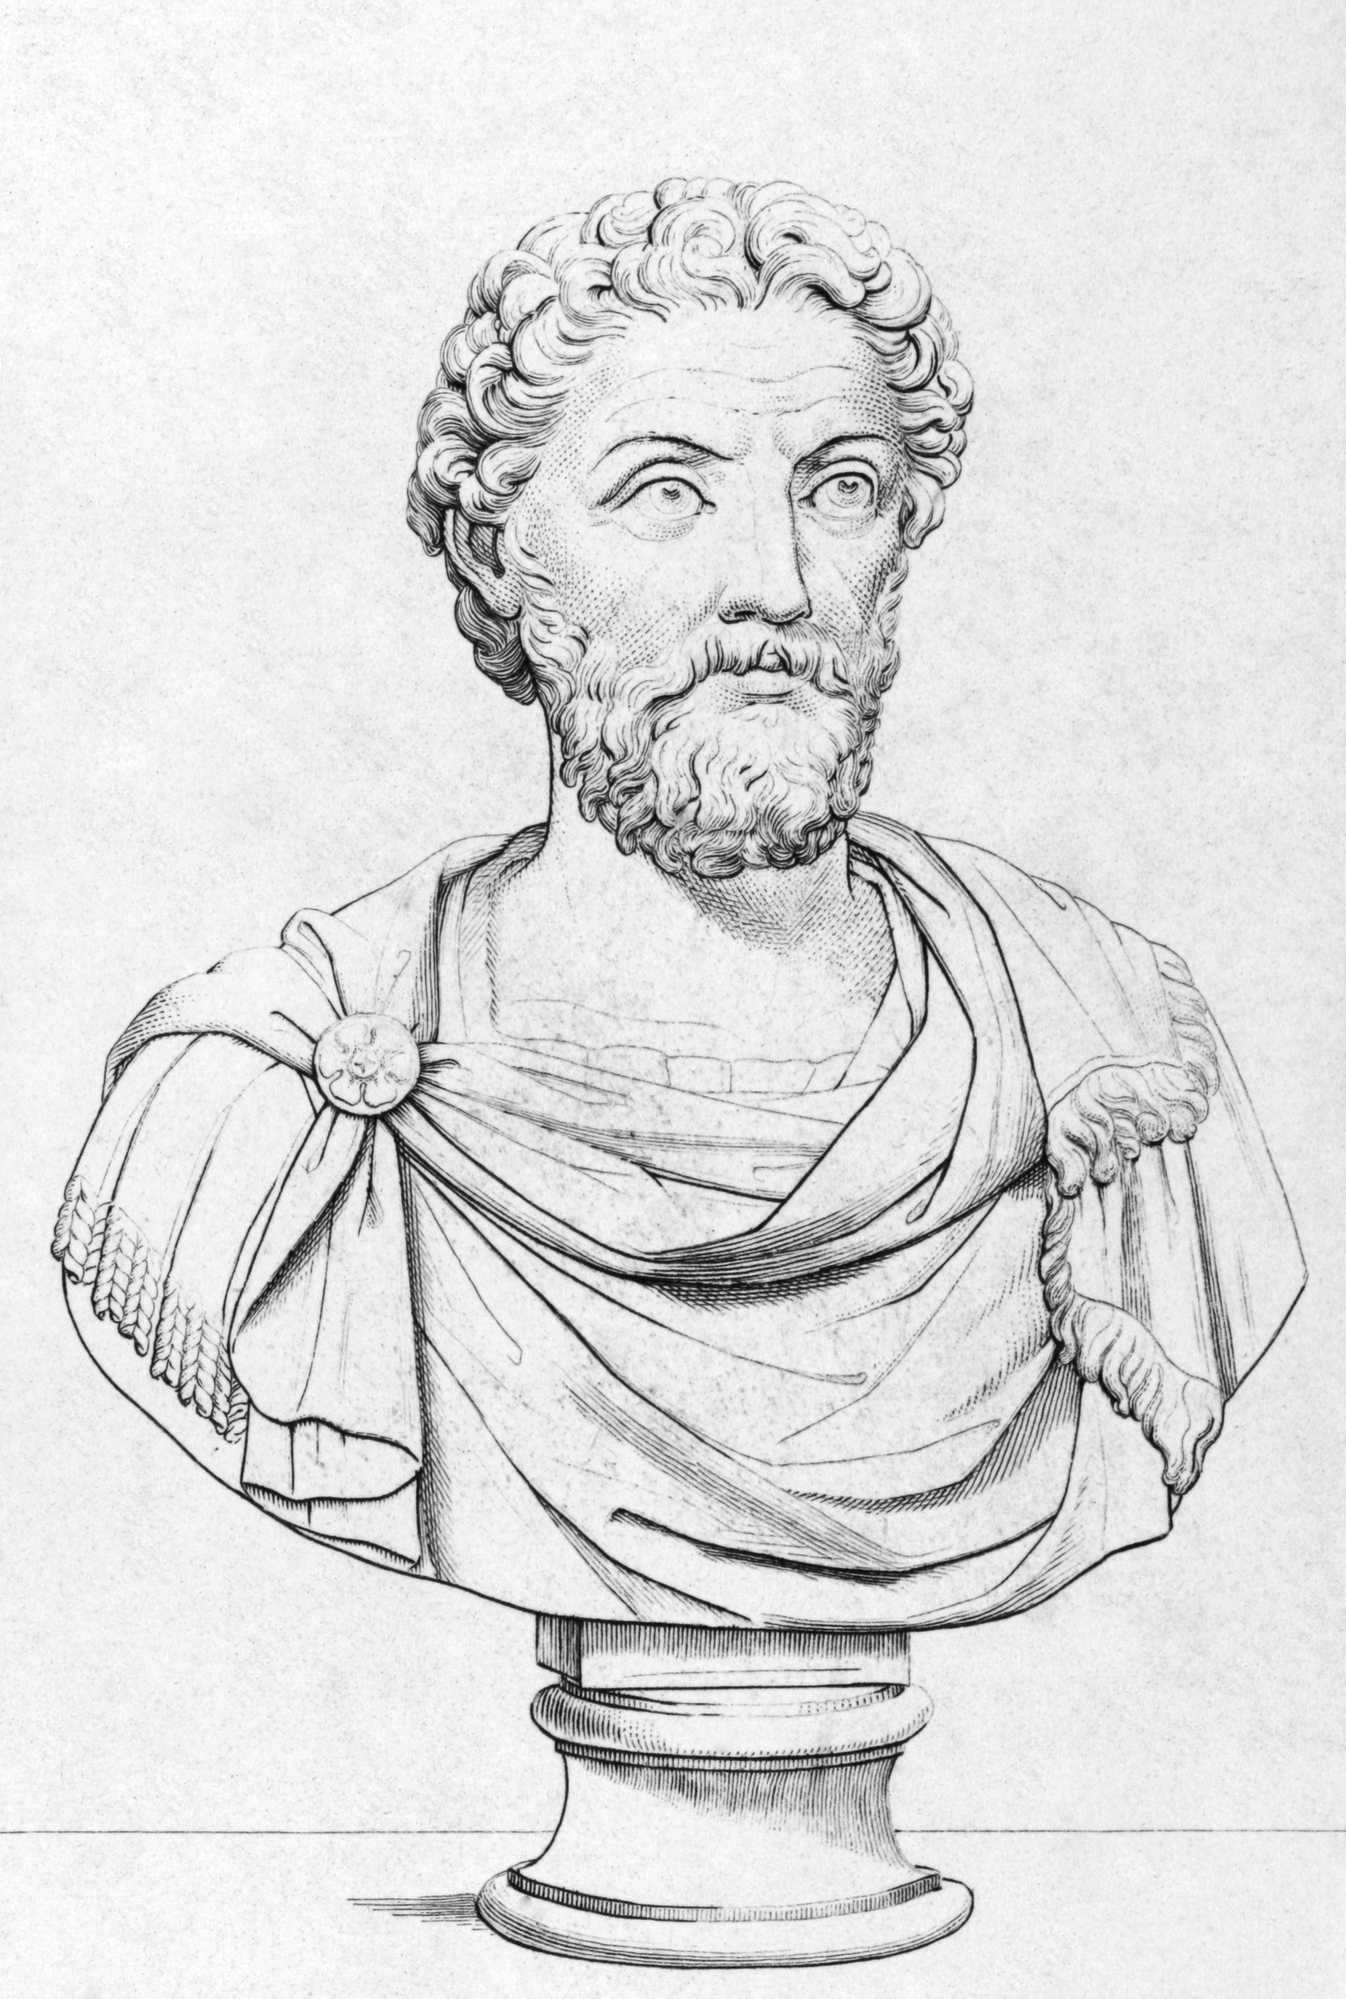 6 Lessons from Stoic Philosopher Marcus Aurelius